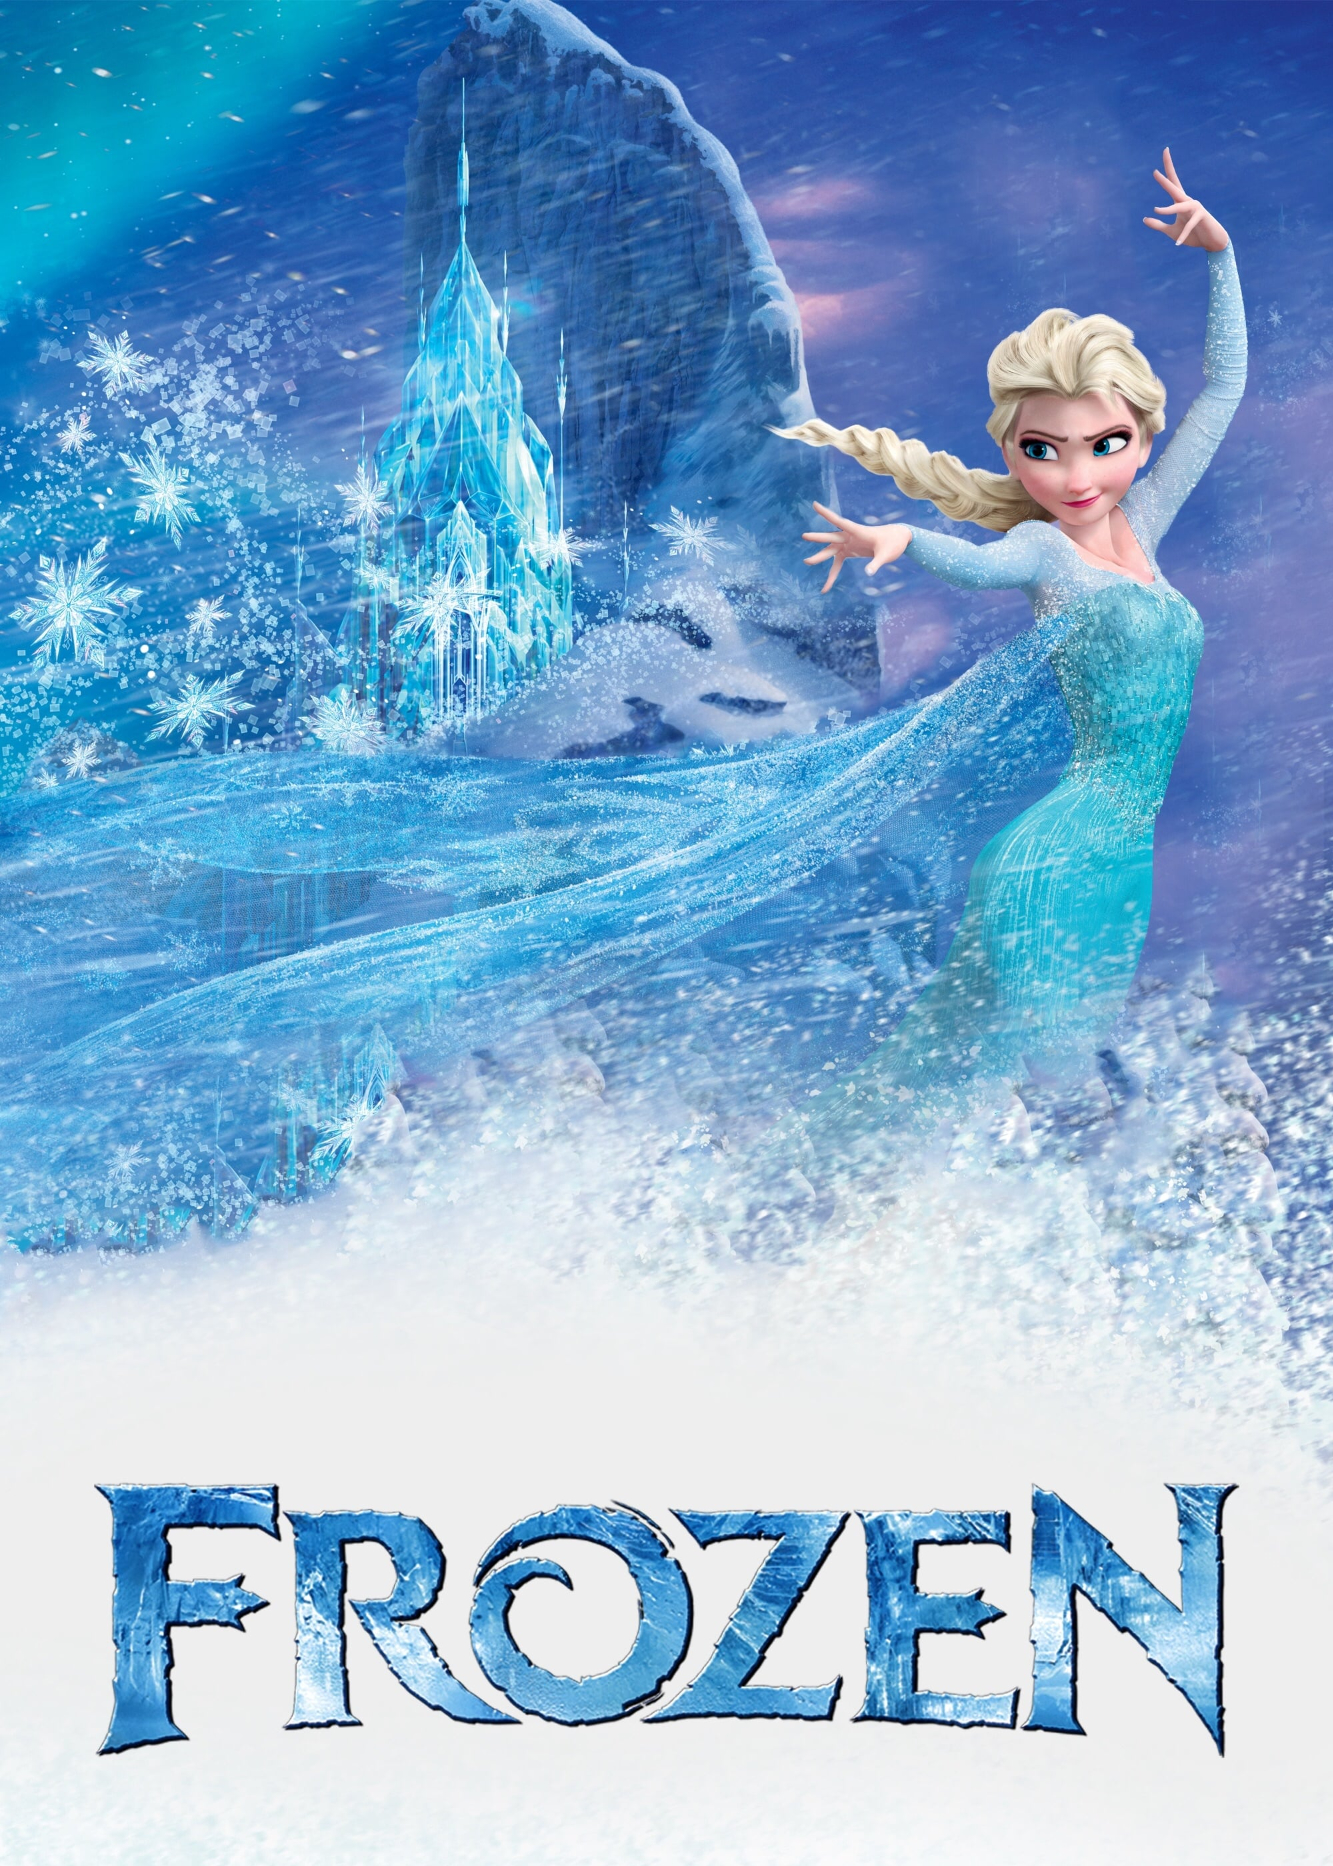 Poster Phim Nữ Hoàng Băng Giá (Frozen)